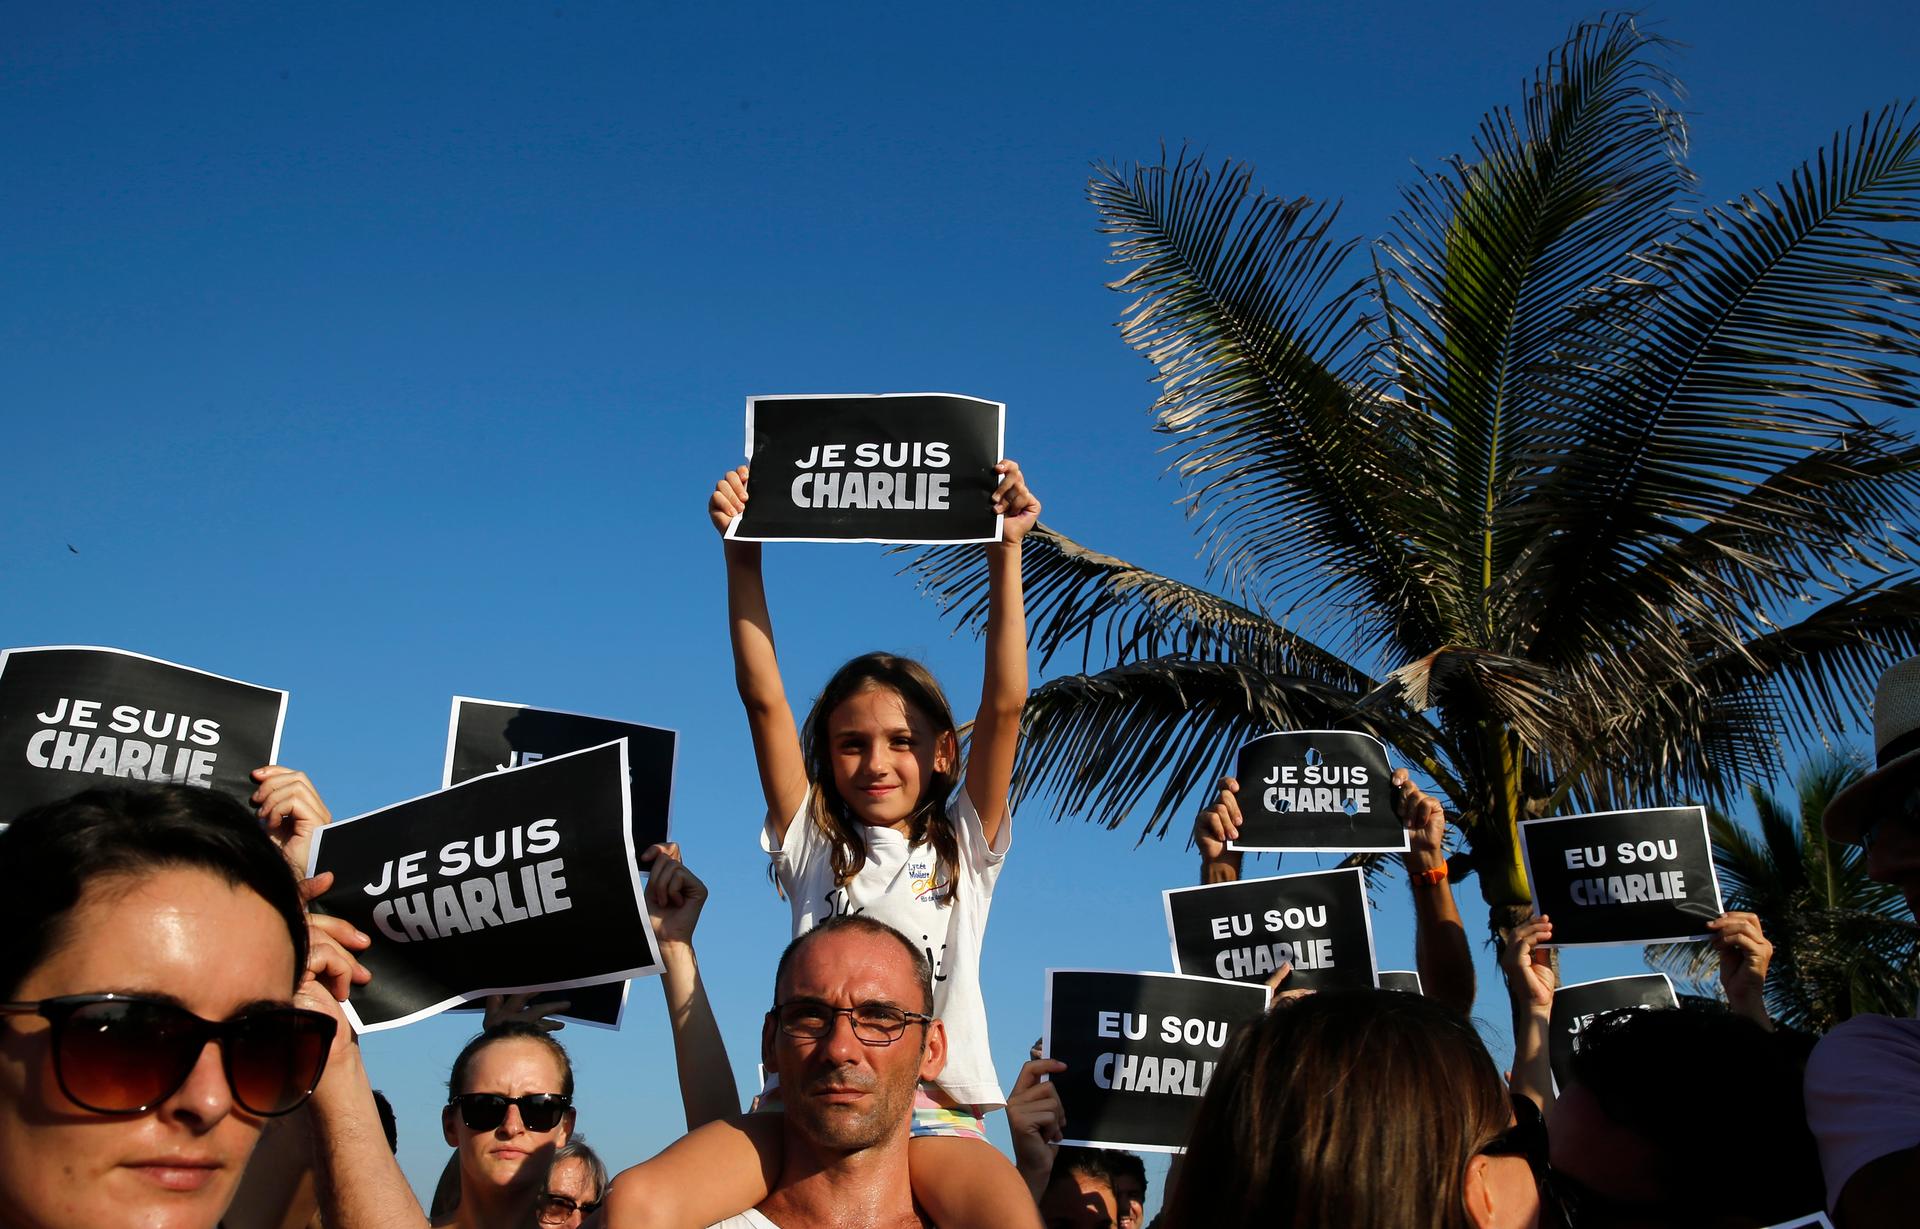 Brazilians and tourists gather before Arapador Beach in Rio de Janeiro to support Charlie Hebdo.